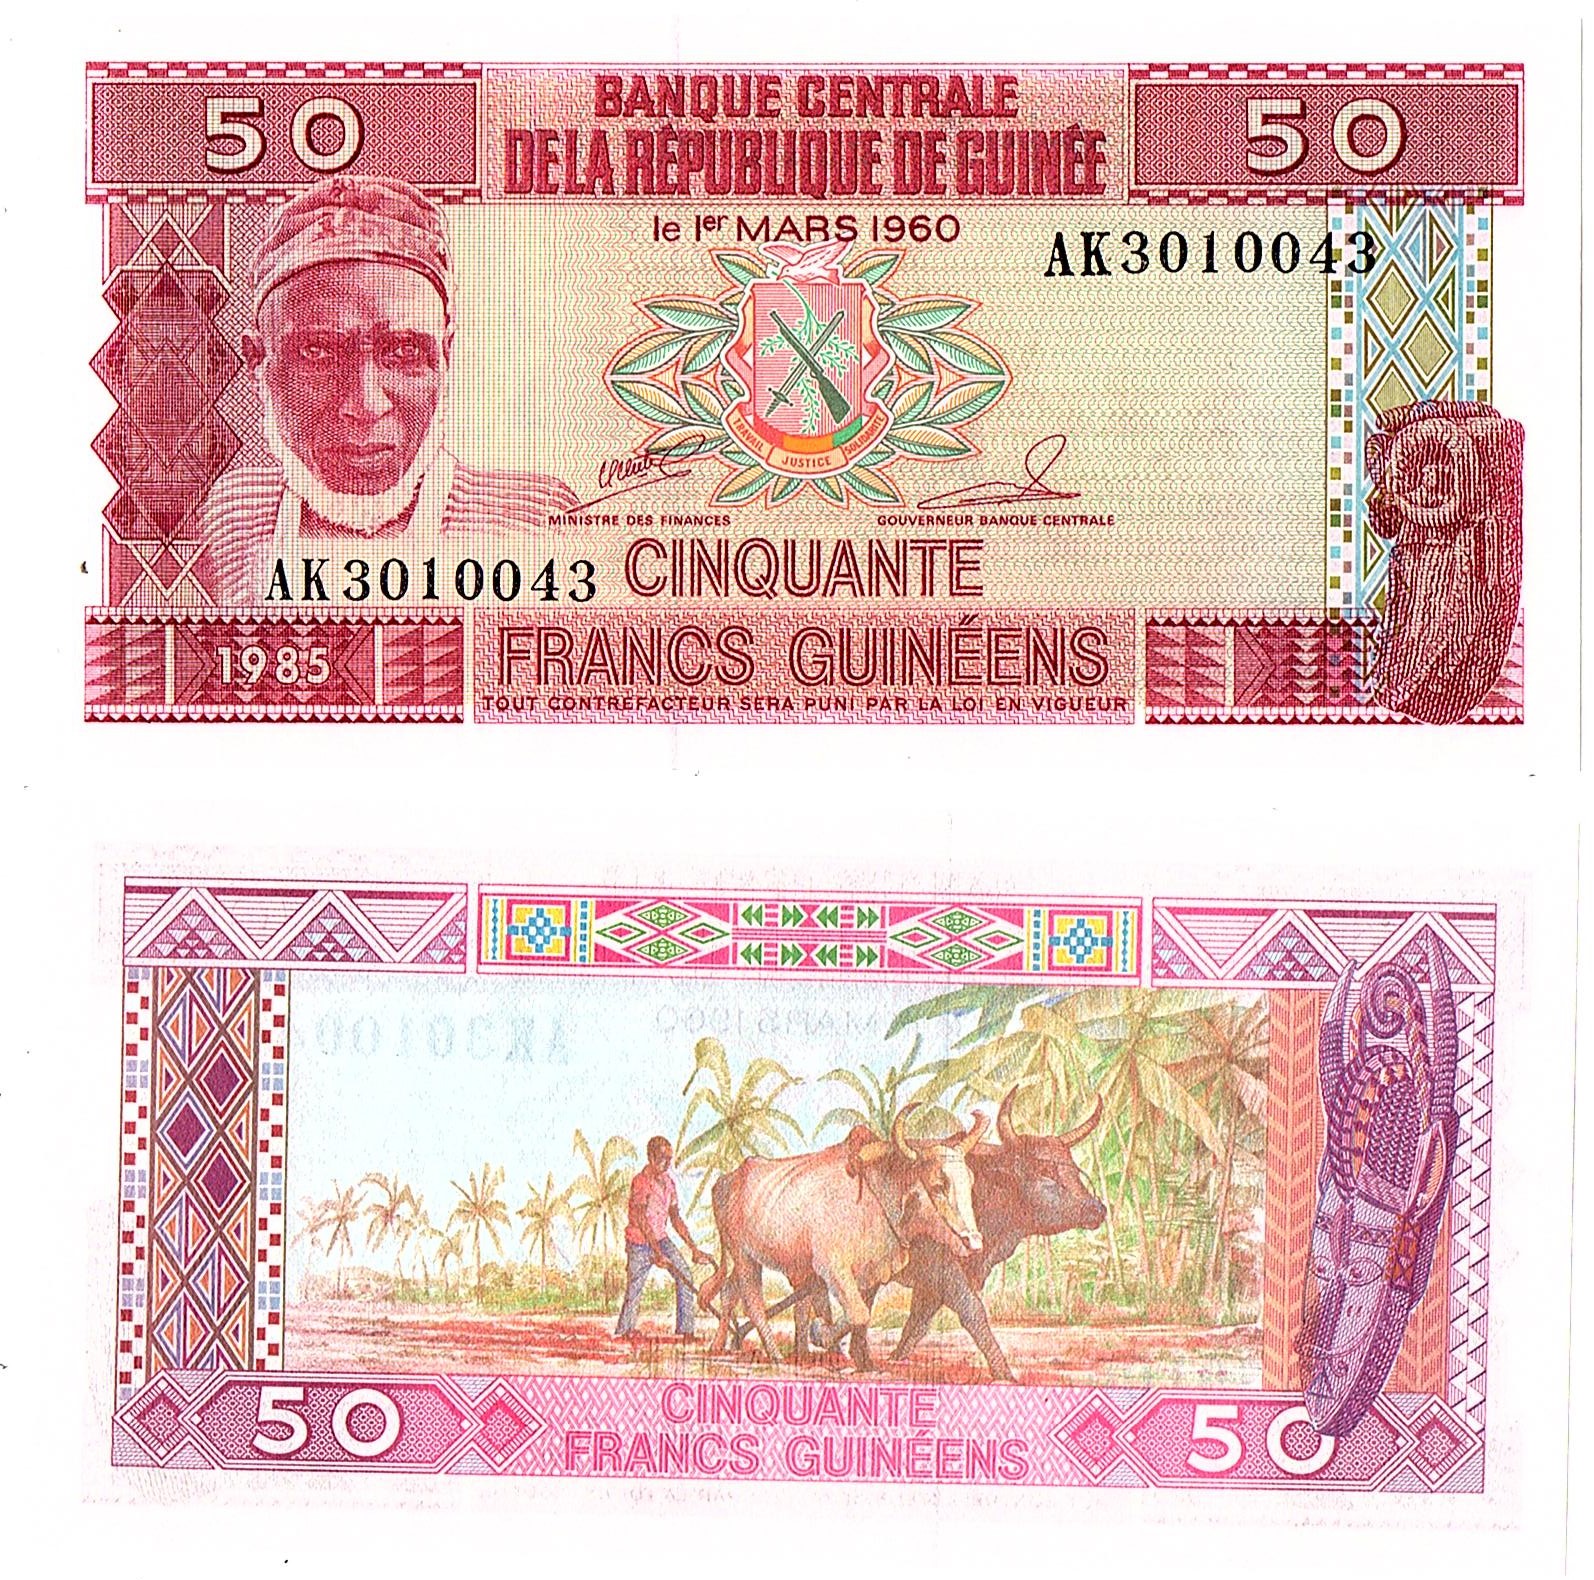 Guinea #29 50 Francs Guinéens